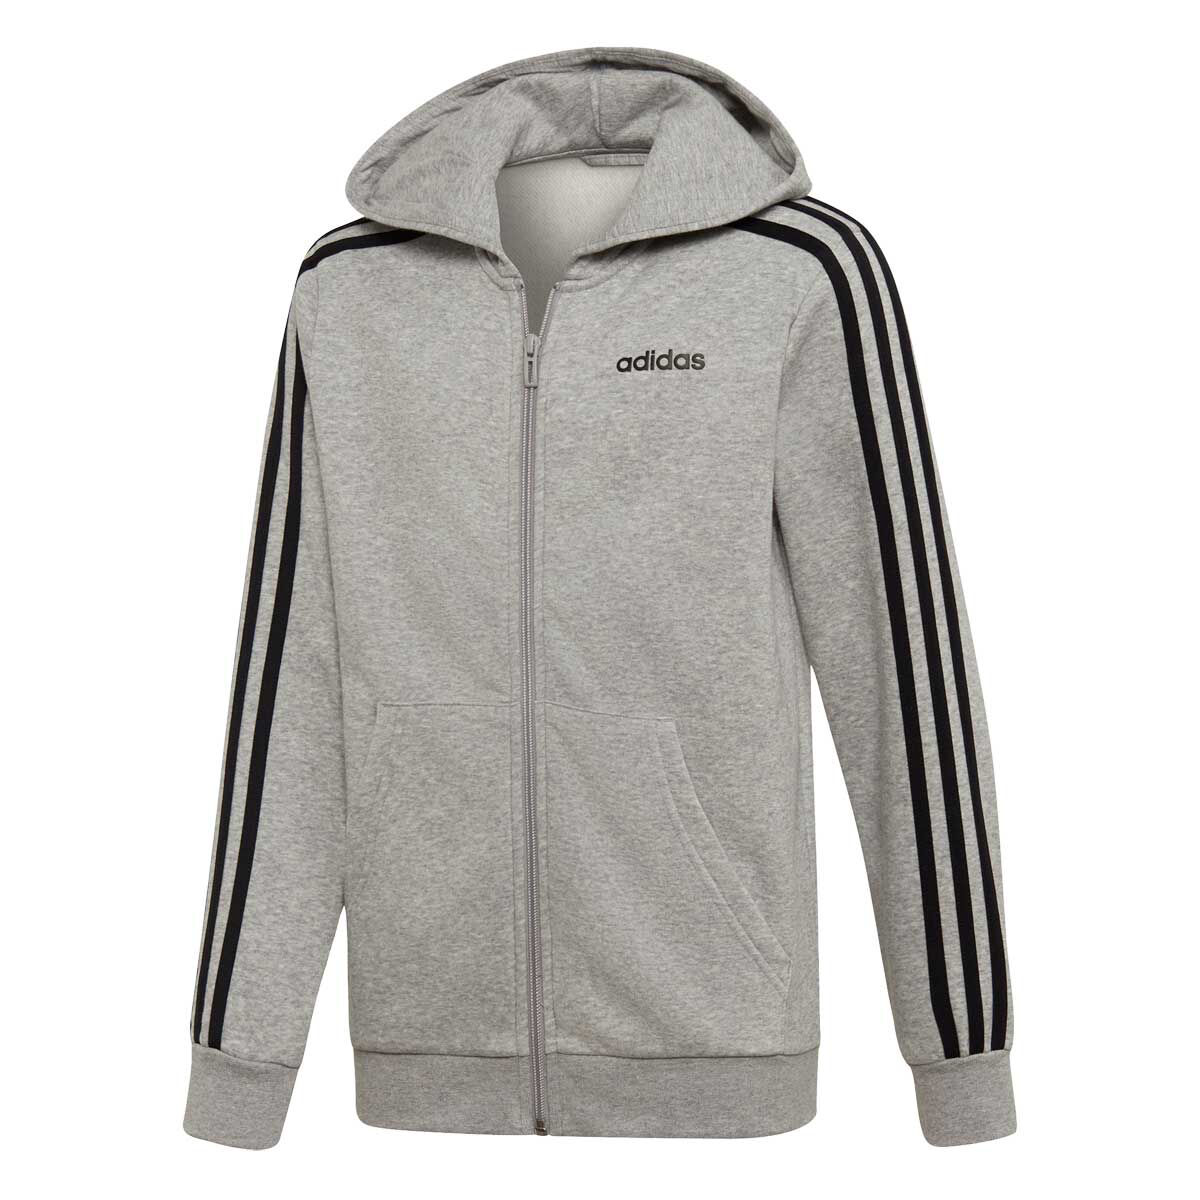 adidas 3 stripe full zip hoodie